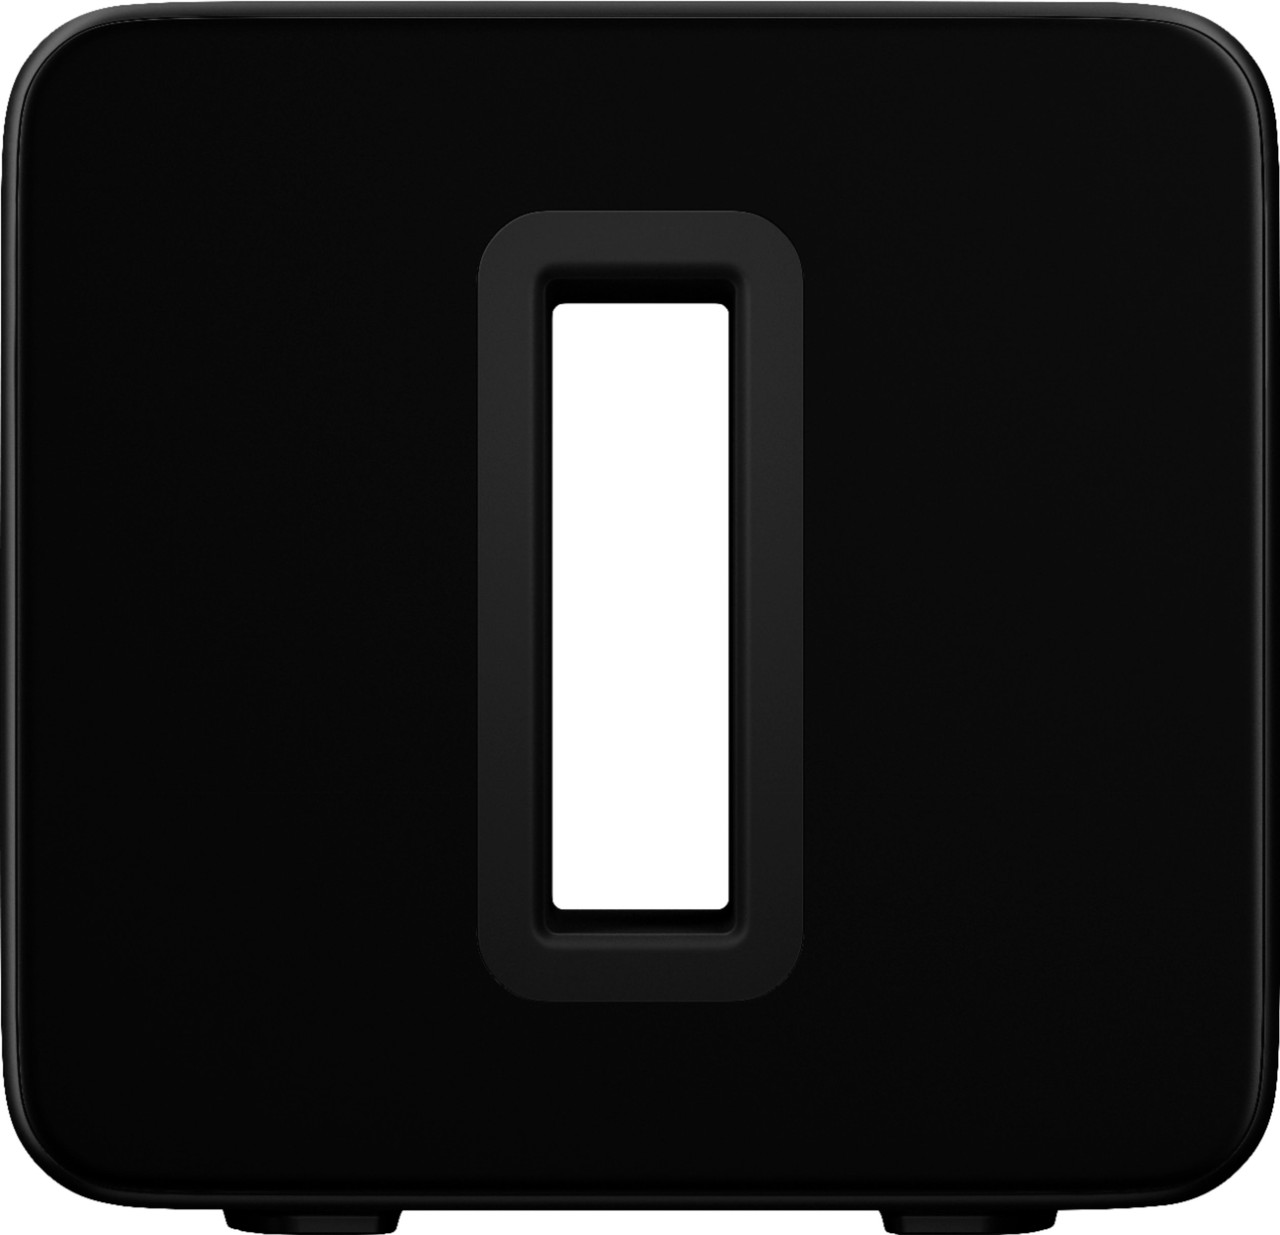 Sonos - Sub (Gen 3) Wireless Subwoofer - Black